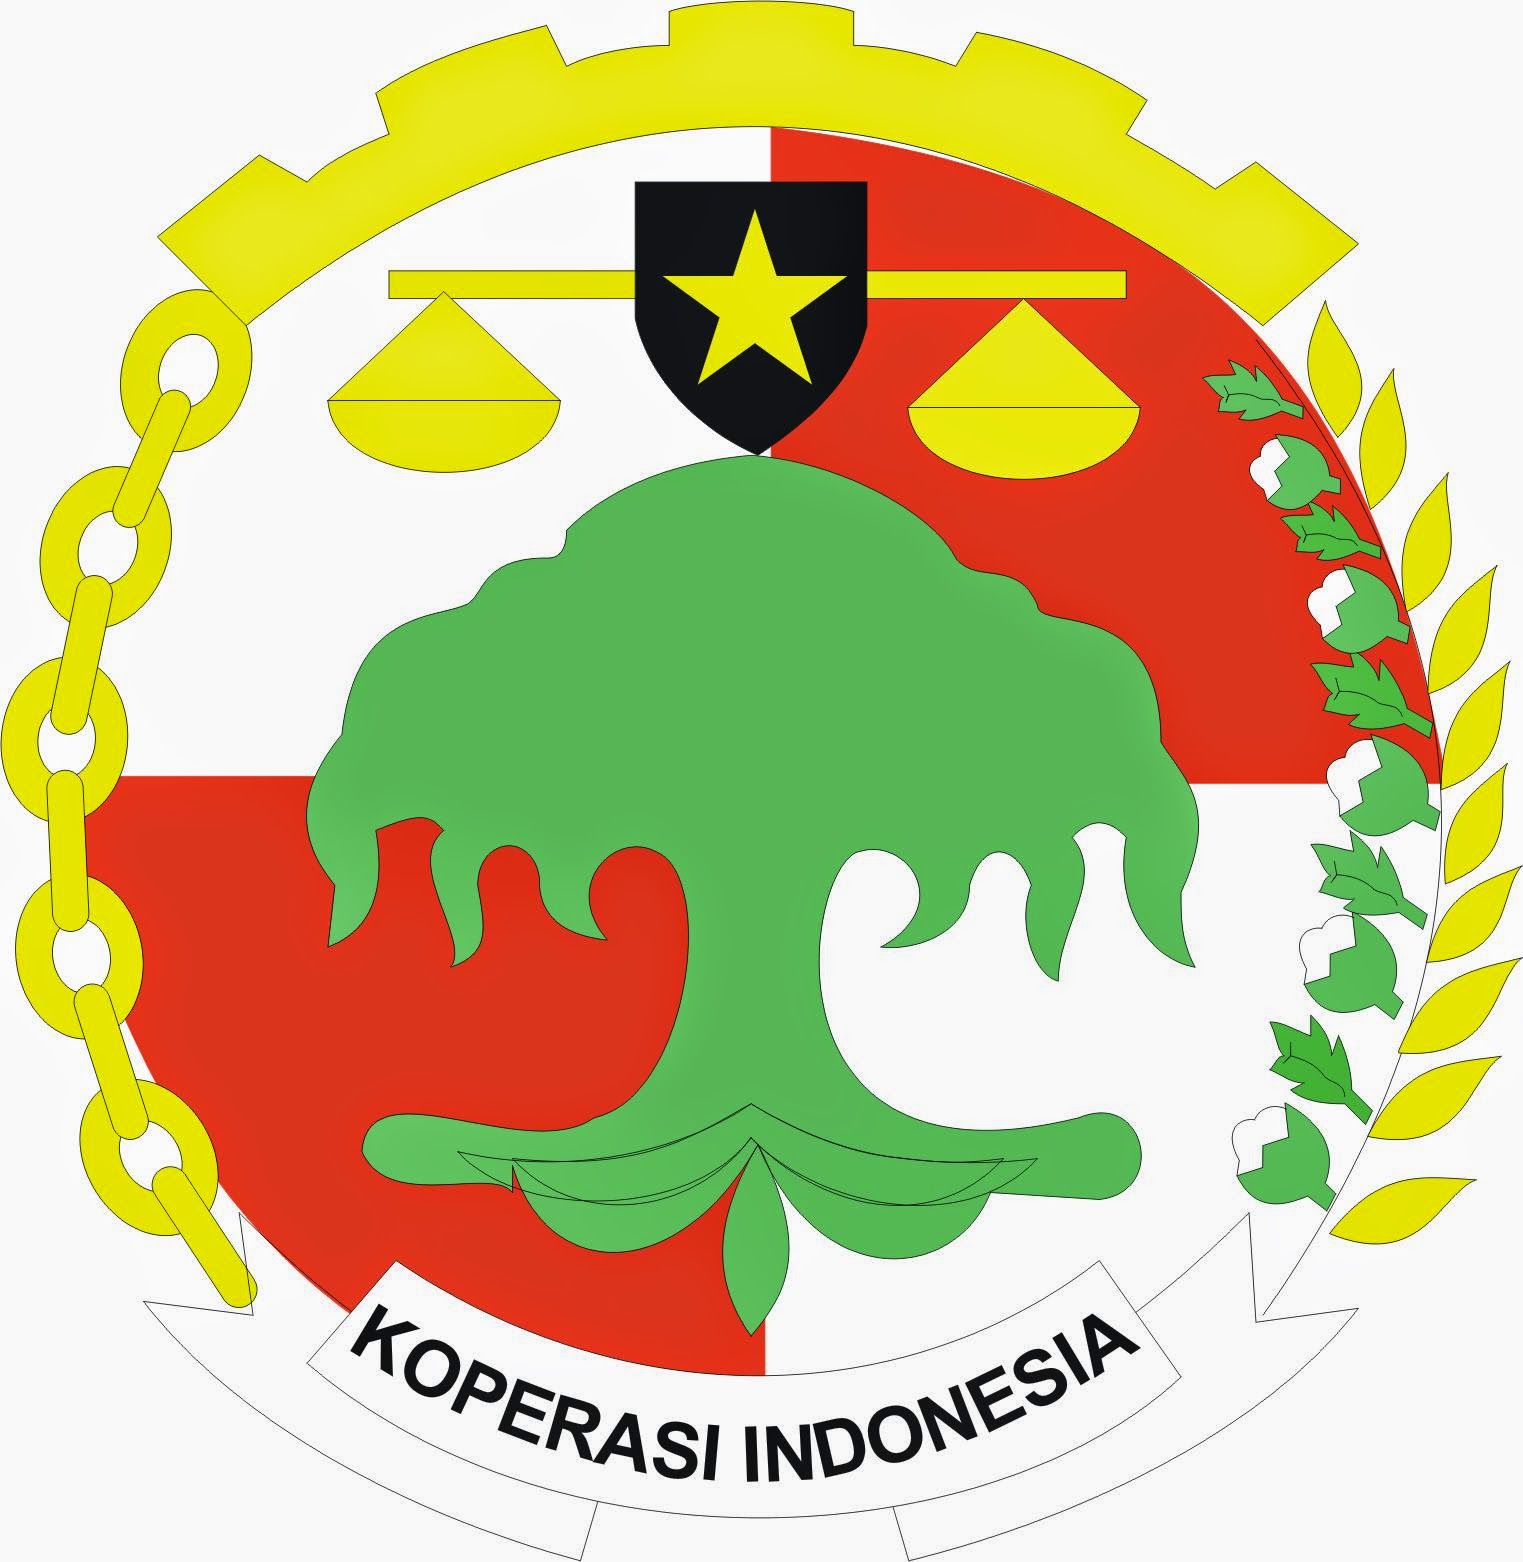 LOGO KOPERASI INDONESIA  Gambar Logo